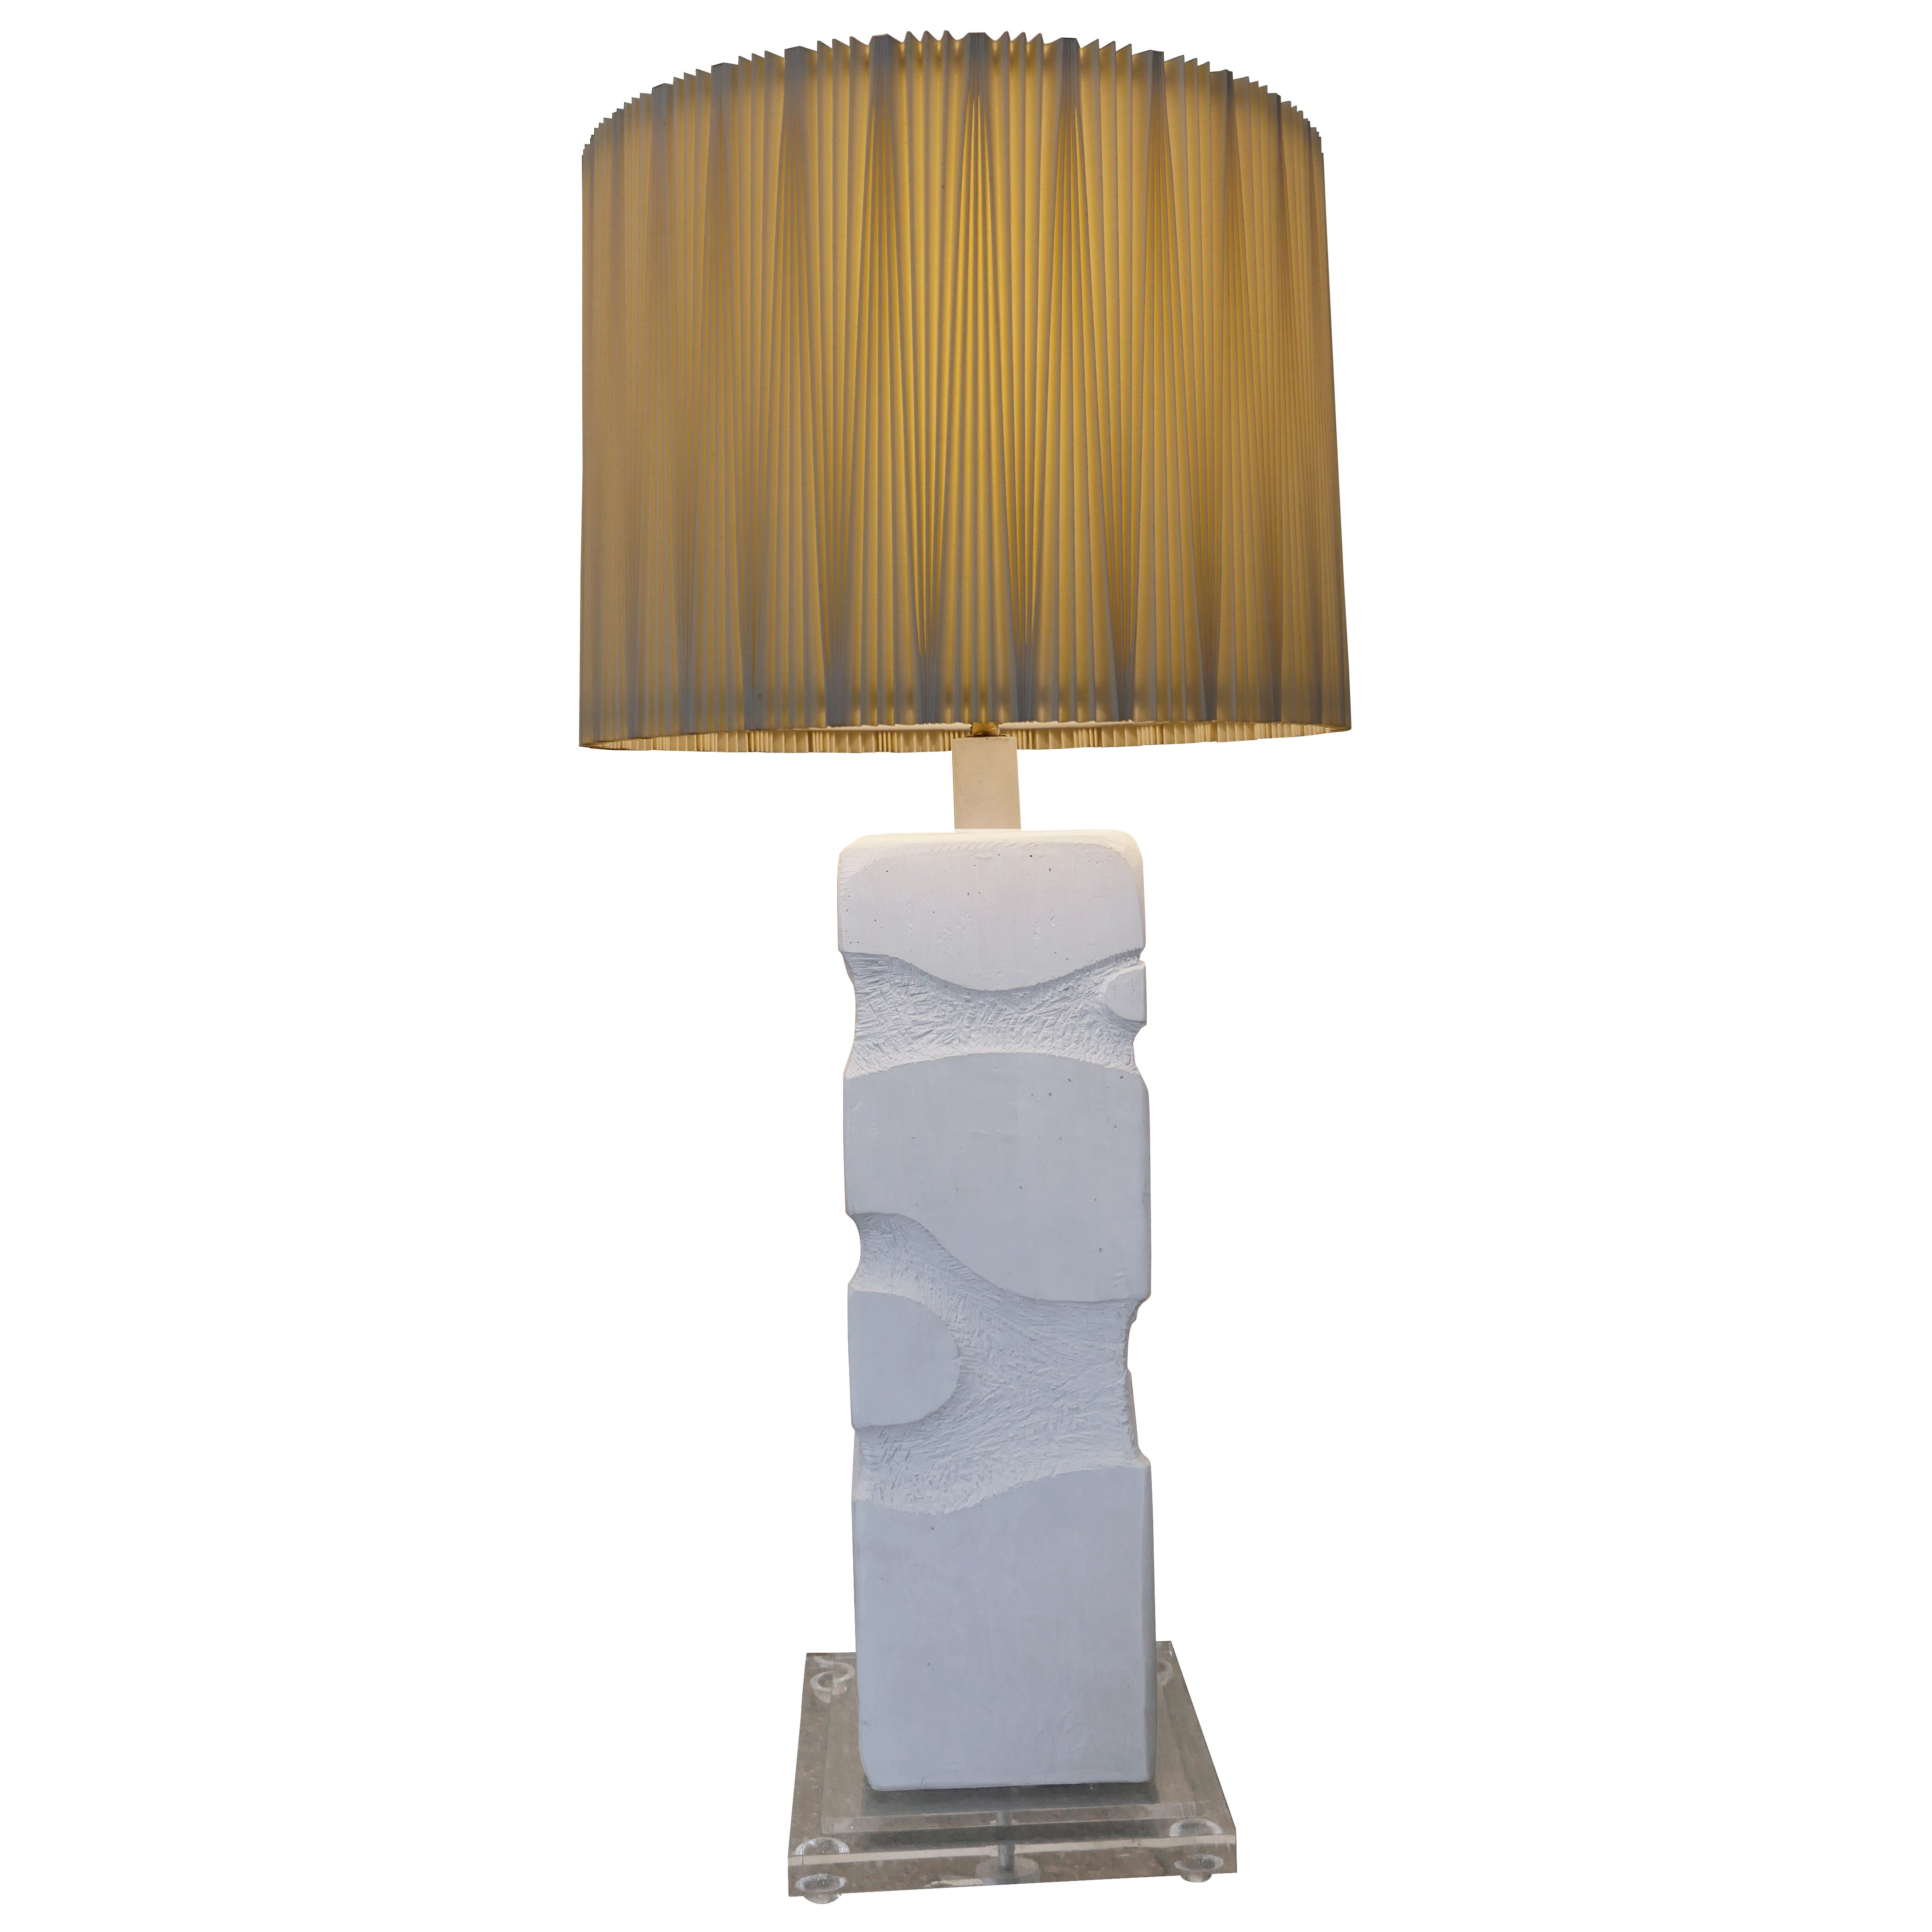 Lampe de table ou lampadaire postmoderne de 1987, avec un abat-jour plissé cylindrique fait sur mesure par Casual Lamps of California. La lampe a une base carrée en lucite et est en très bon état de fonctionnement. 